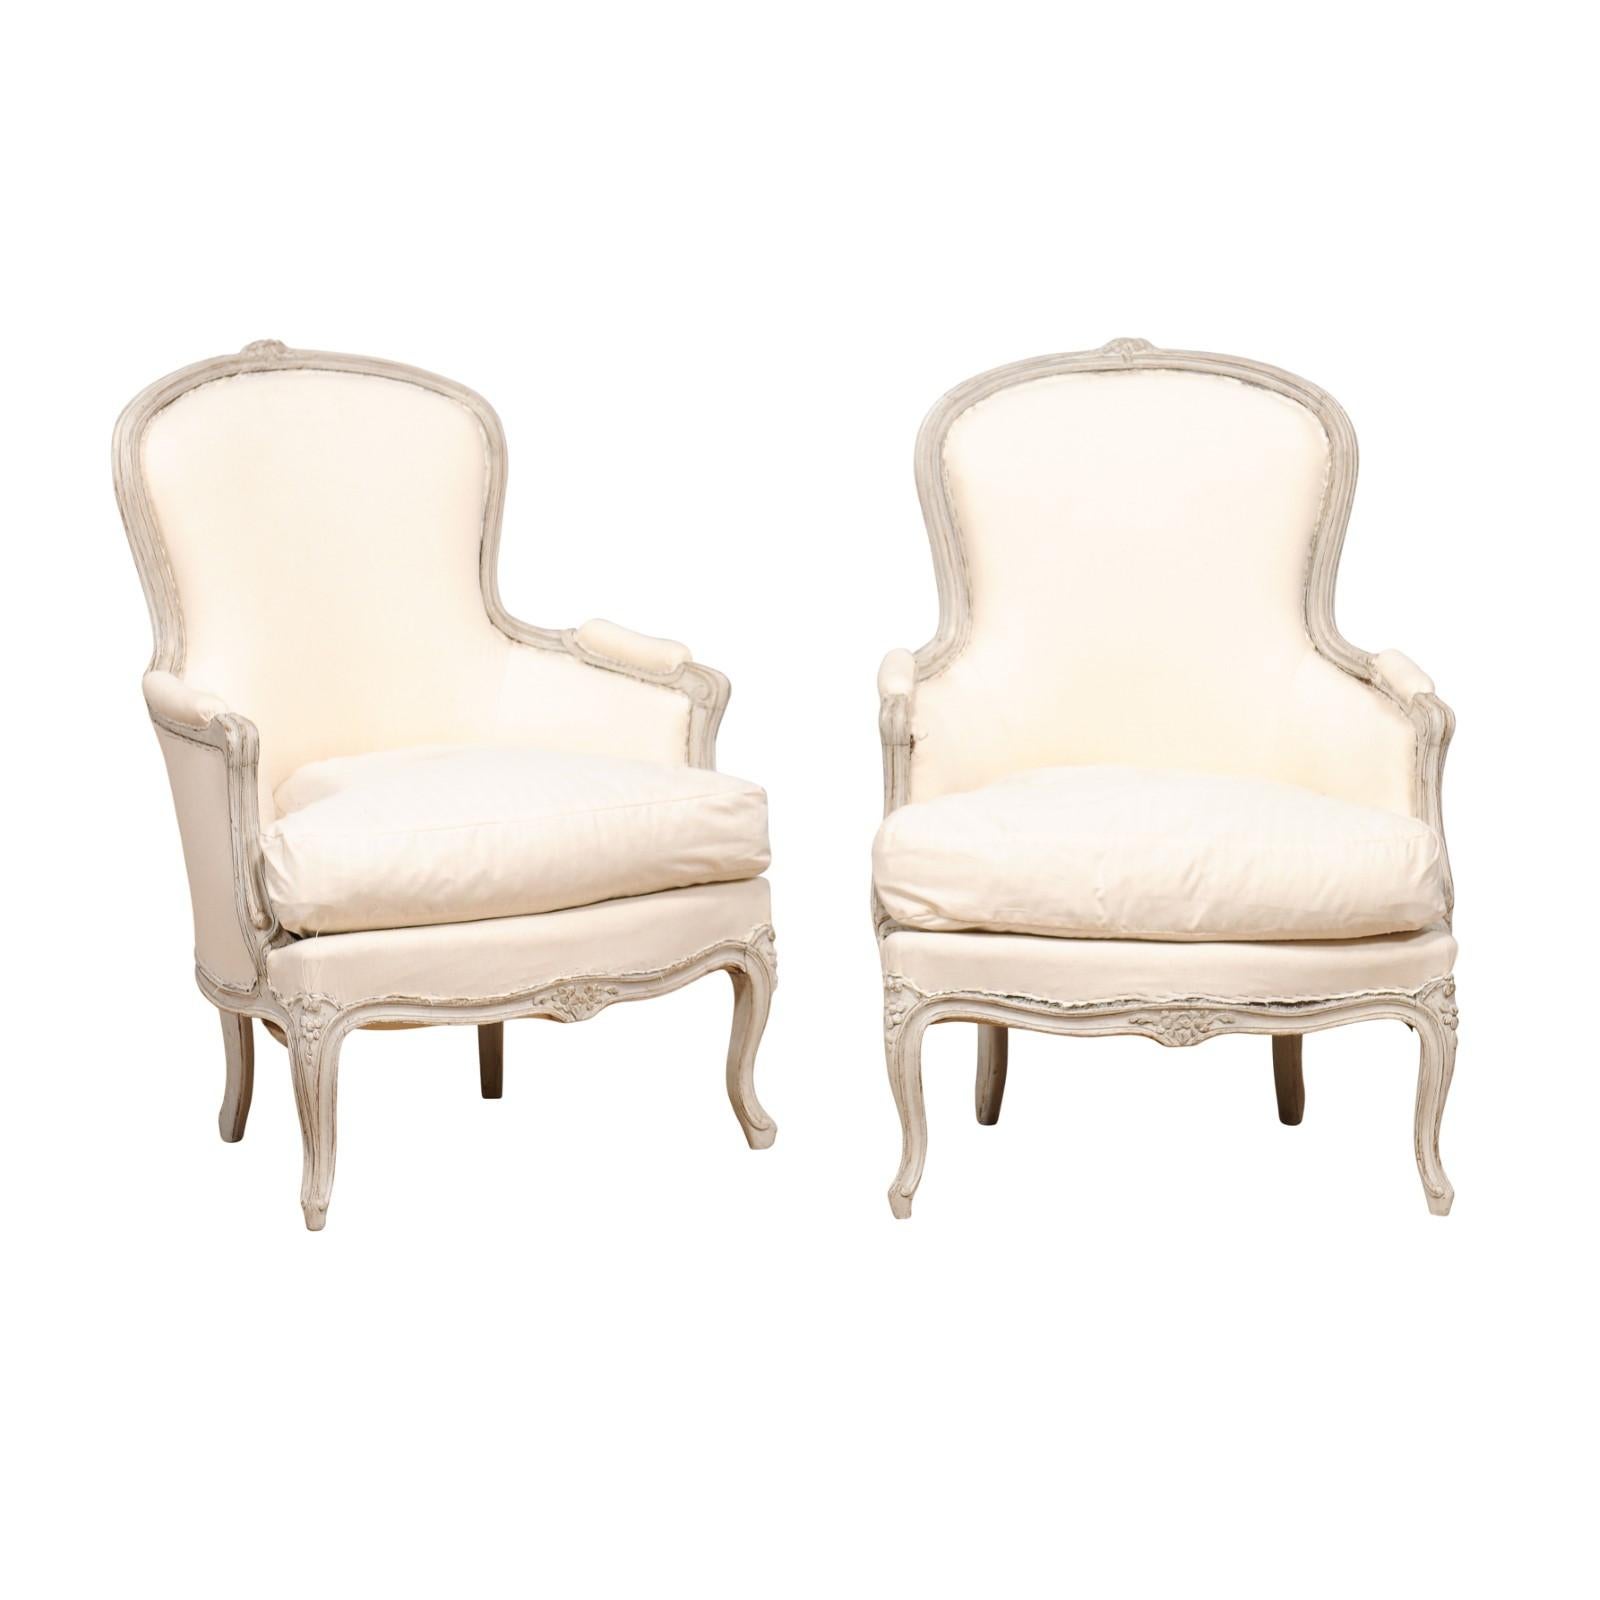 Paire de chaises bergères suédoises de style rococo classique peintes en gris clair, datant d'environ 1890, avec décor floral sculpté, pieds cabriole et tapisserie d'ameublement. Plongez-vous dans l'allure poétique de cette paire de bergères de